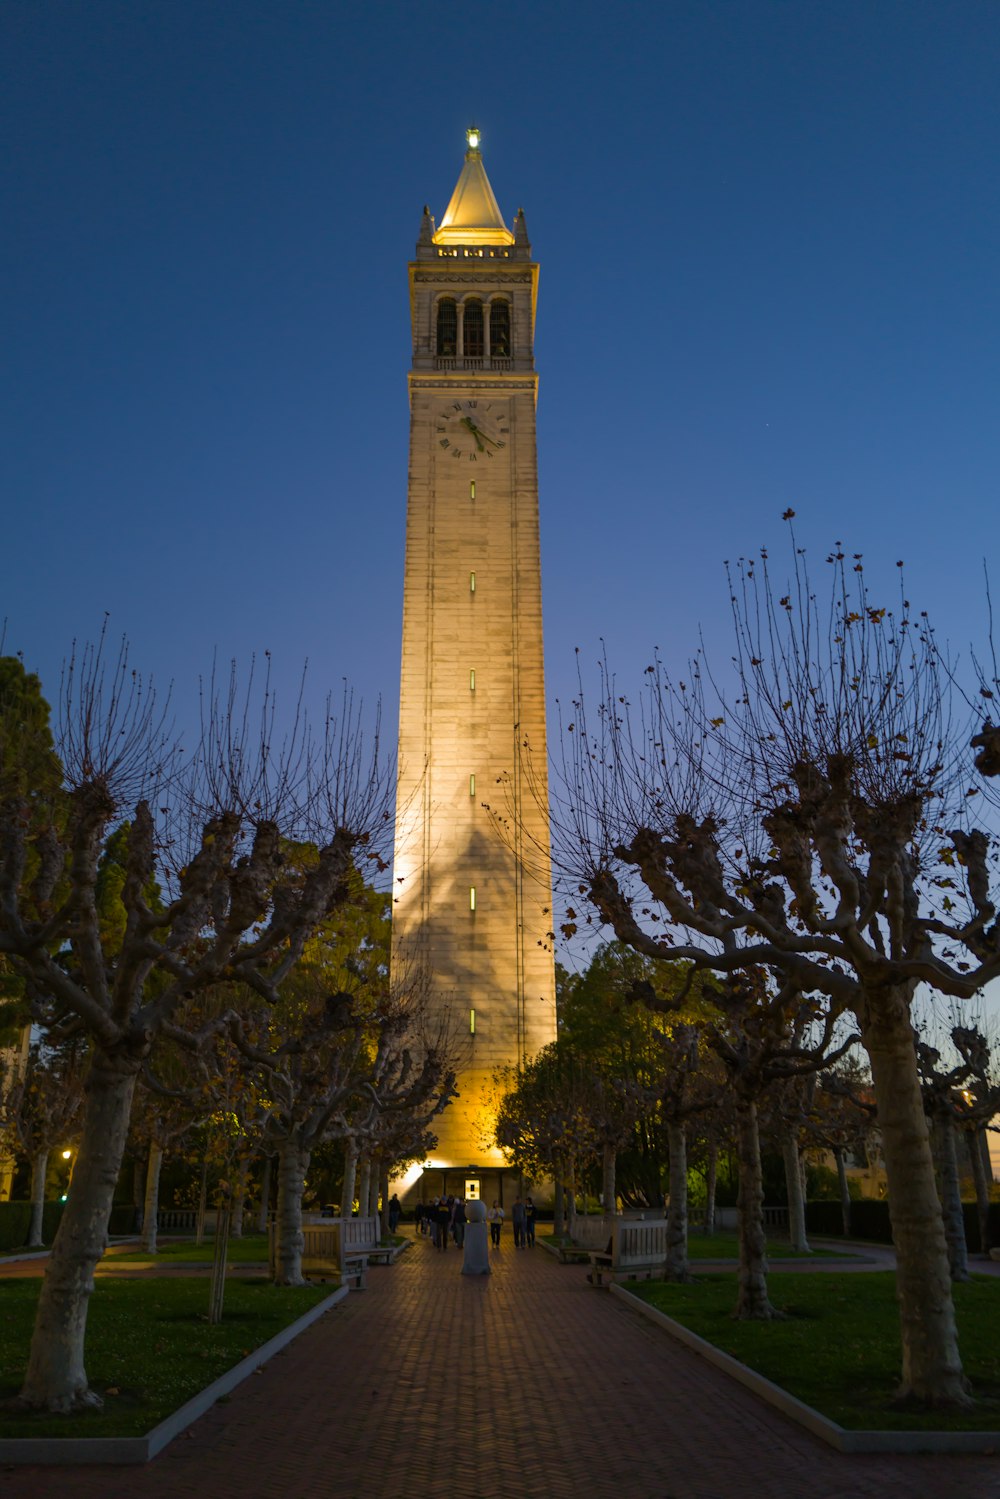 Una alta torre del reloj que se eleva sobre un parque lleno de árboles